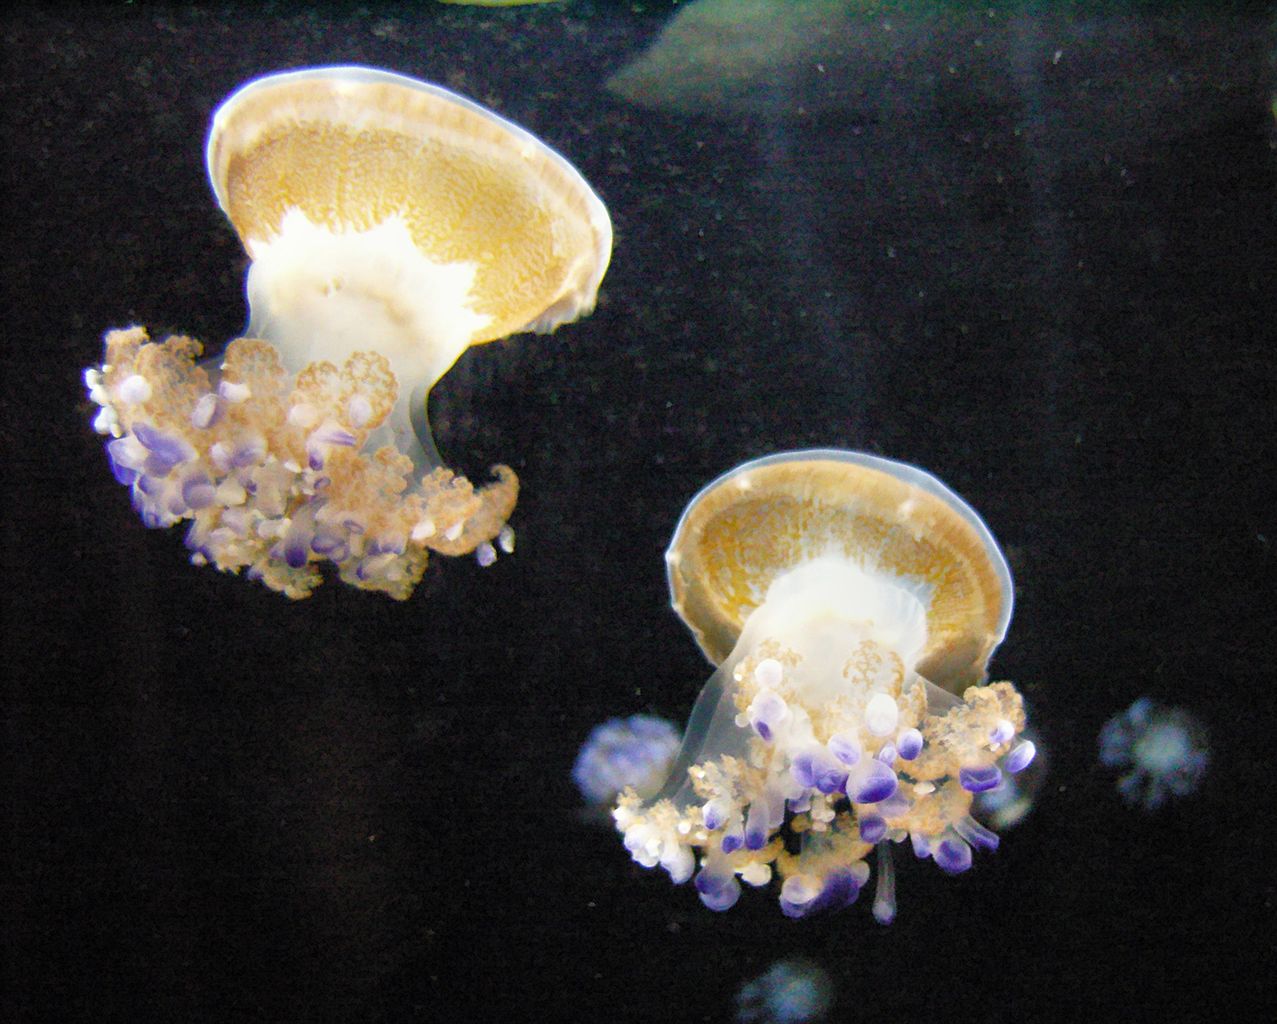 Cotylorhiza tuberculata (Mediterranean Jellyfish)